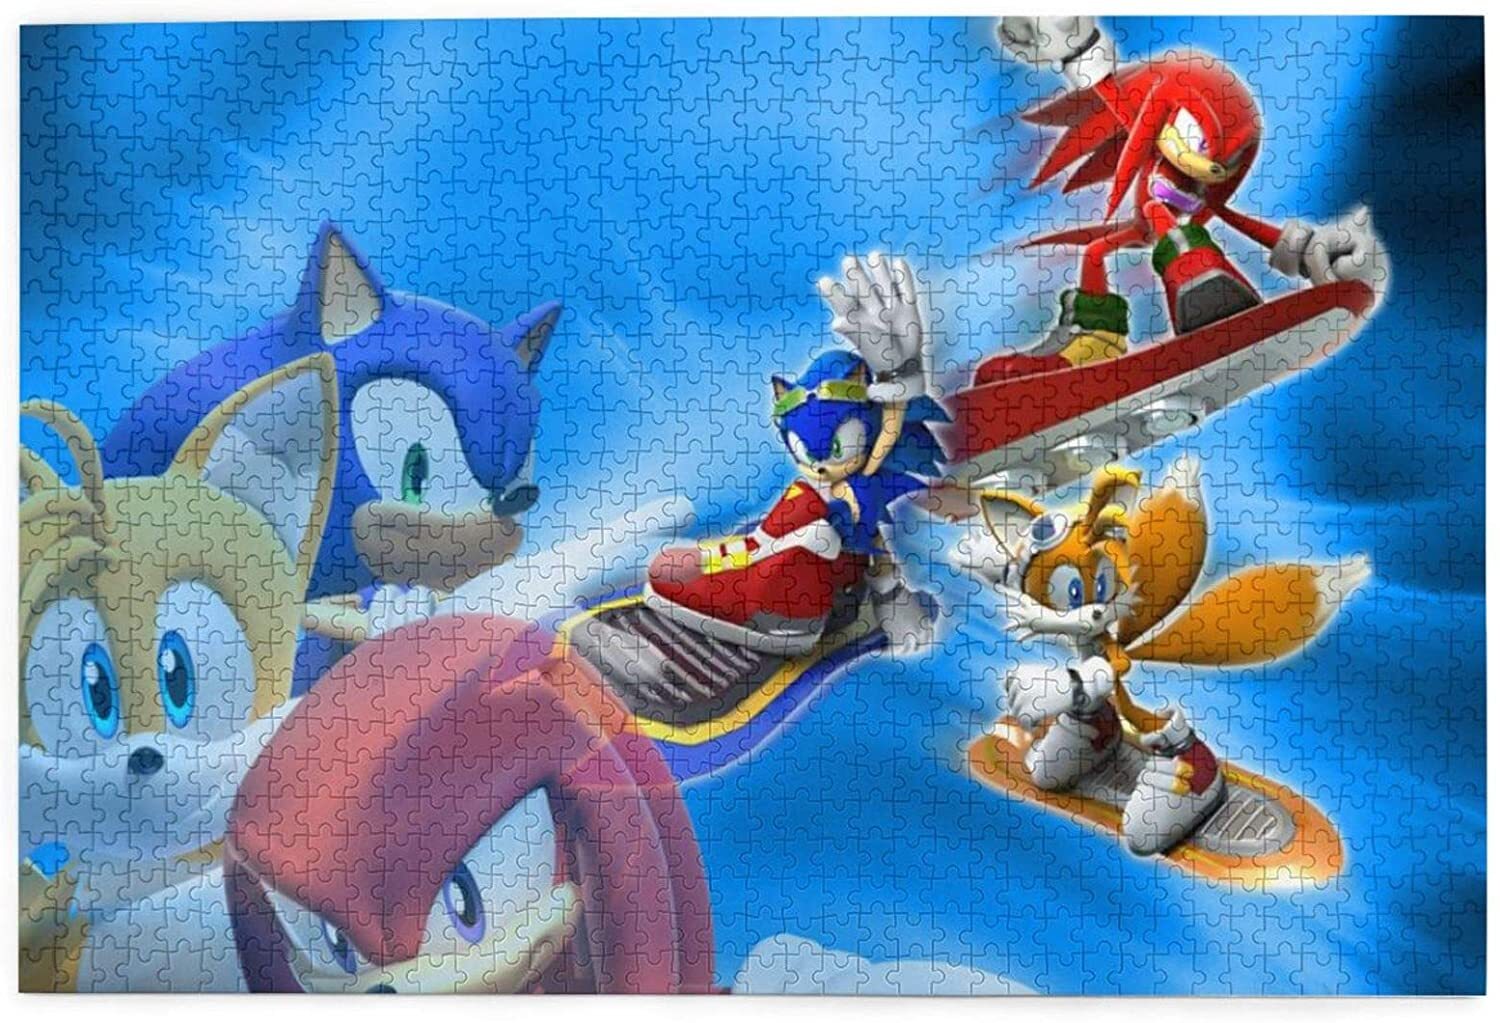 Sonic revert